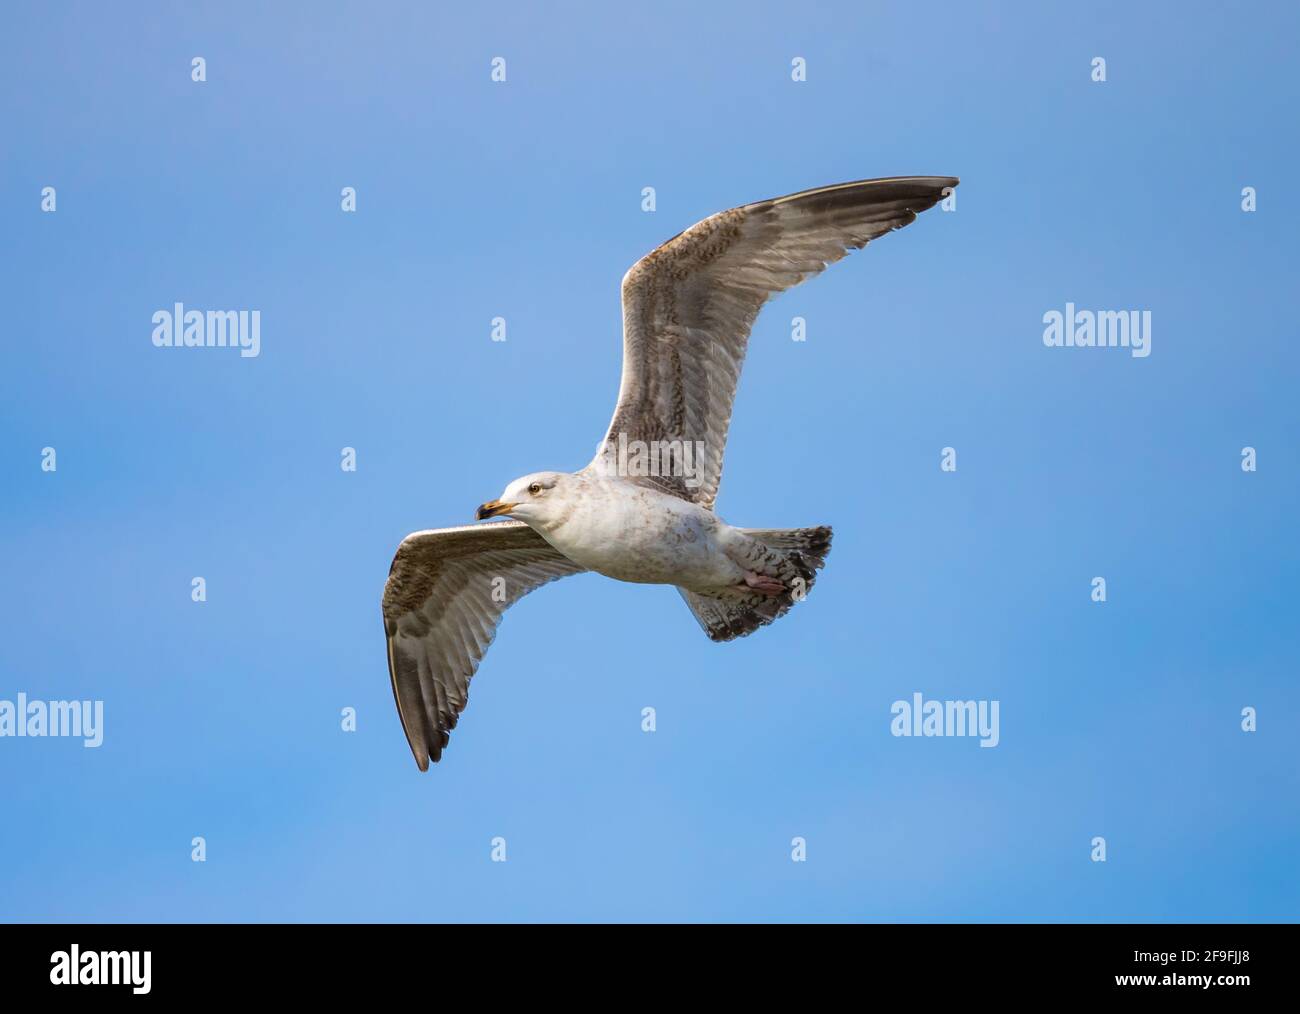 Le jeune Goéland argenté (Larus argentatus) vole contre le ciel bleu au printemps à West Sussex, Angleterre, Royaume-Uni. Mouette ou mouette en vol. Banque D'Images